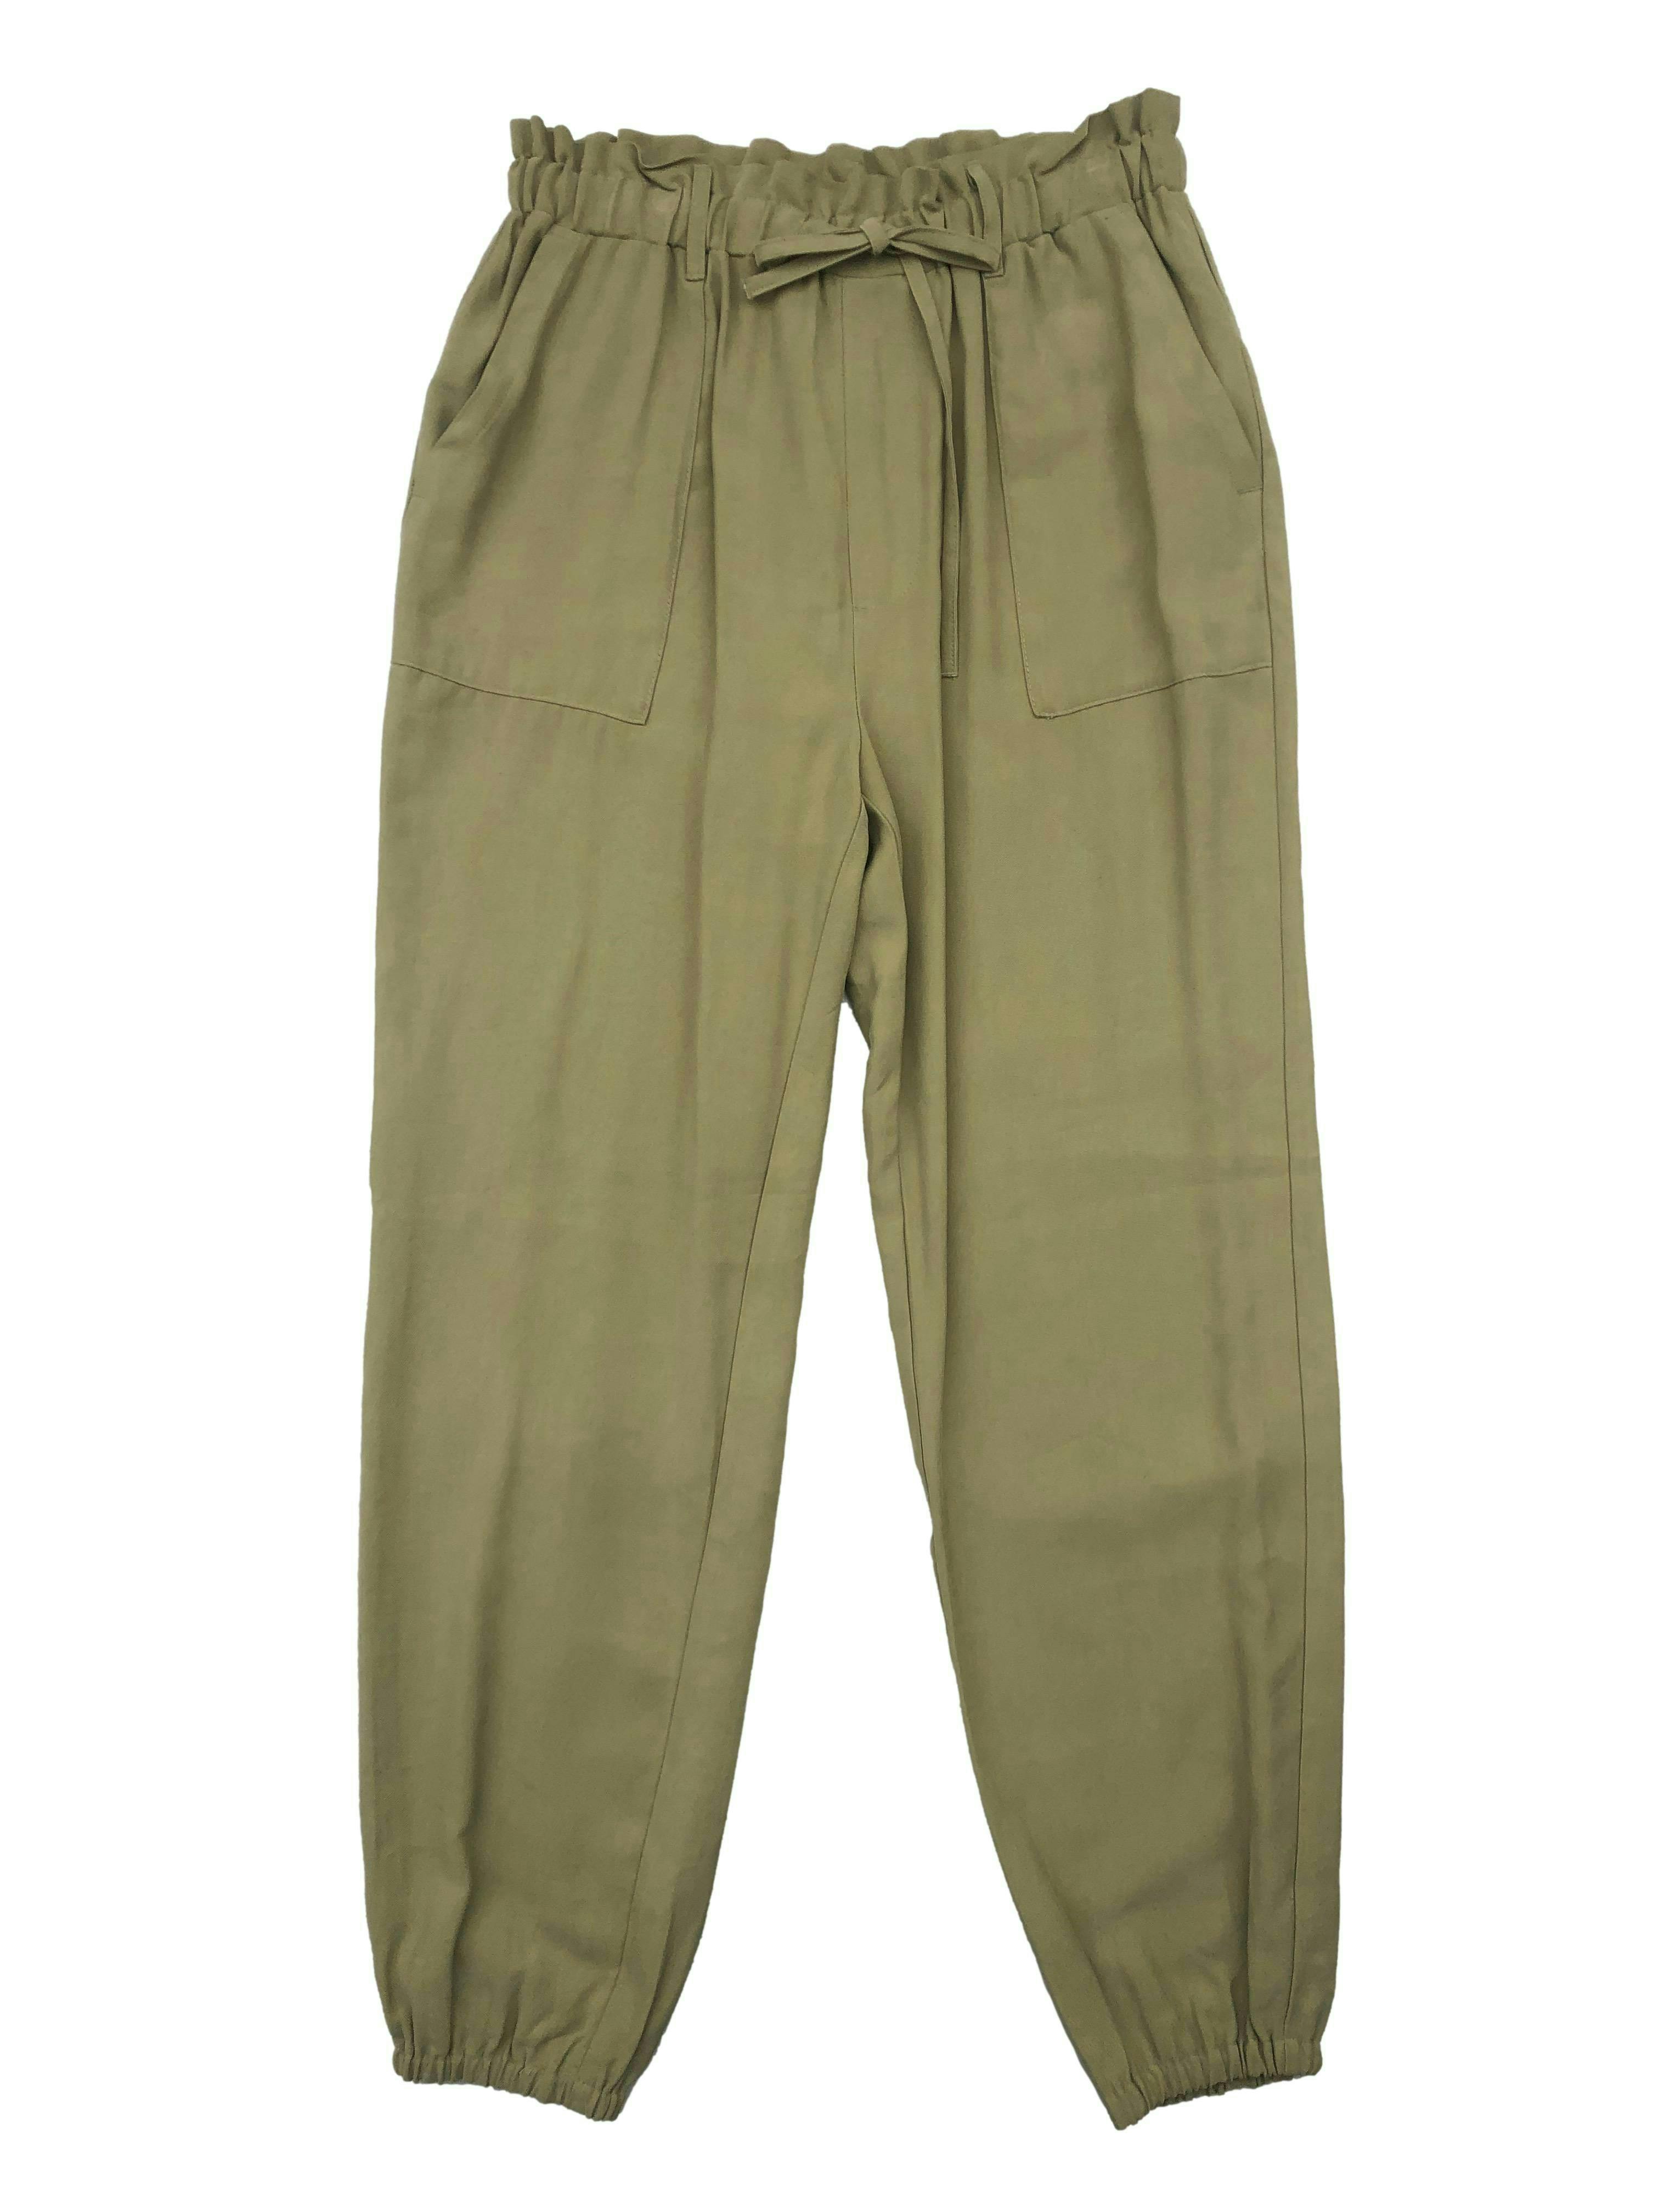 Pantalón INC verde, tela fresca, elástico en cintura y basta, bolsillos laterales. Cintura 68cm largo 100cm